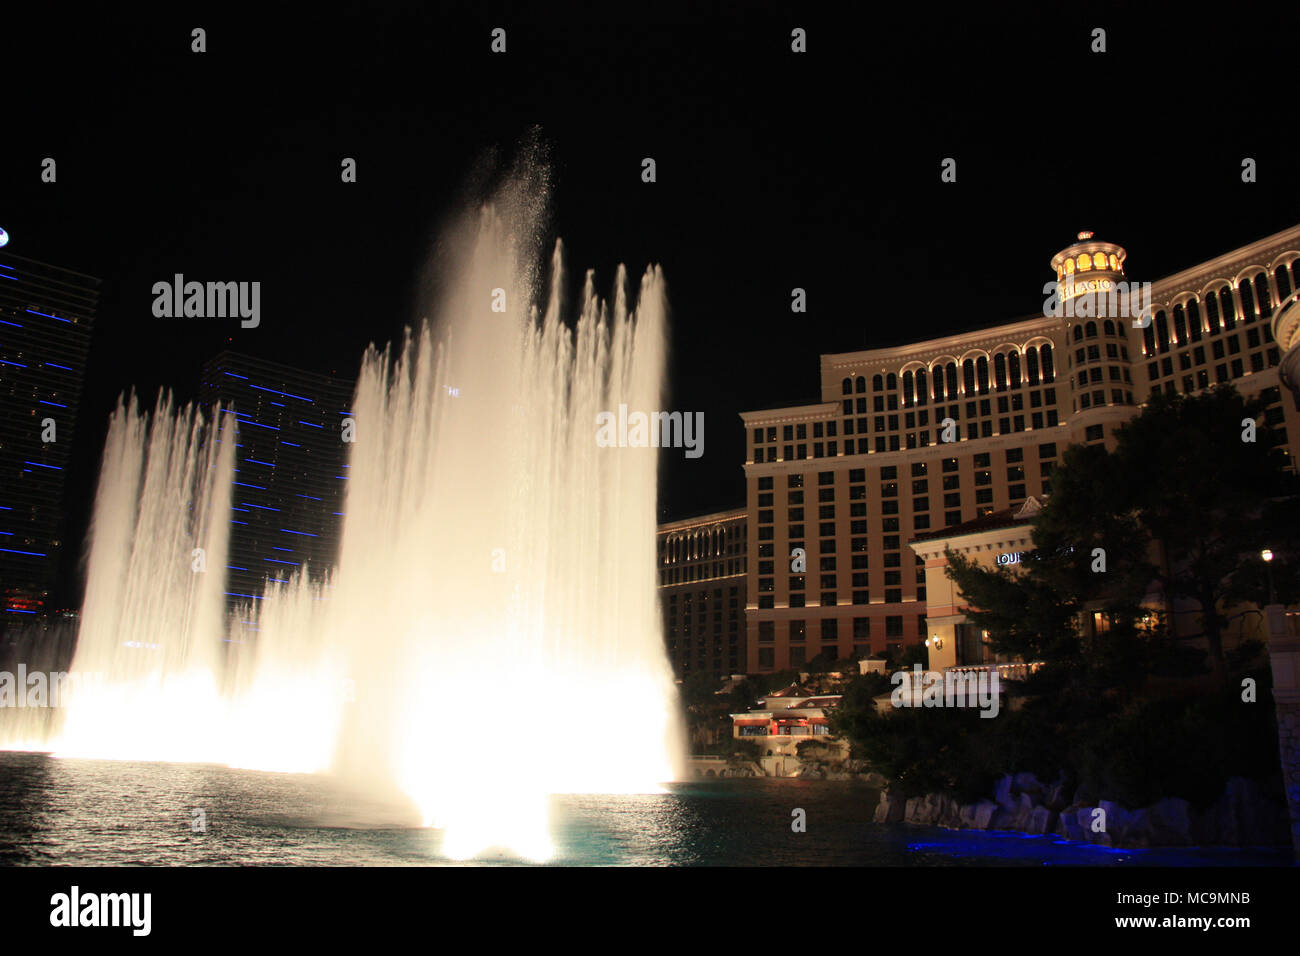 Vue de la nuit de l'hôtel Bellagio Resort and Casino avec ses célèbres fontaines de l'eau danse, Las Vegas, NV, USA Banque D'Images